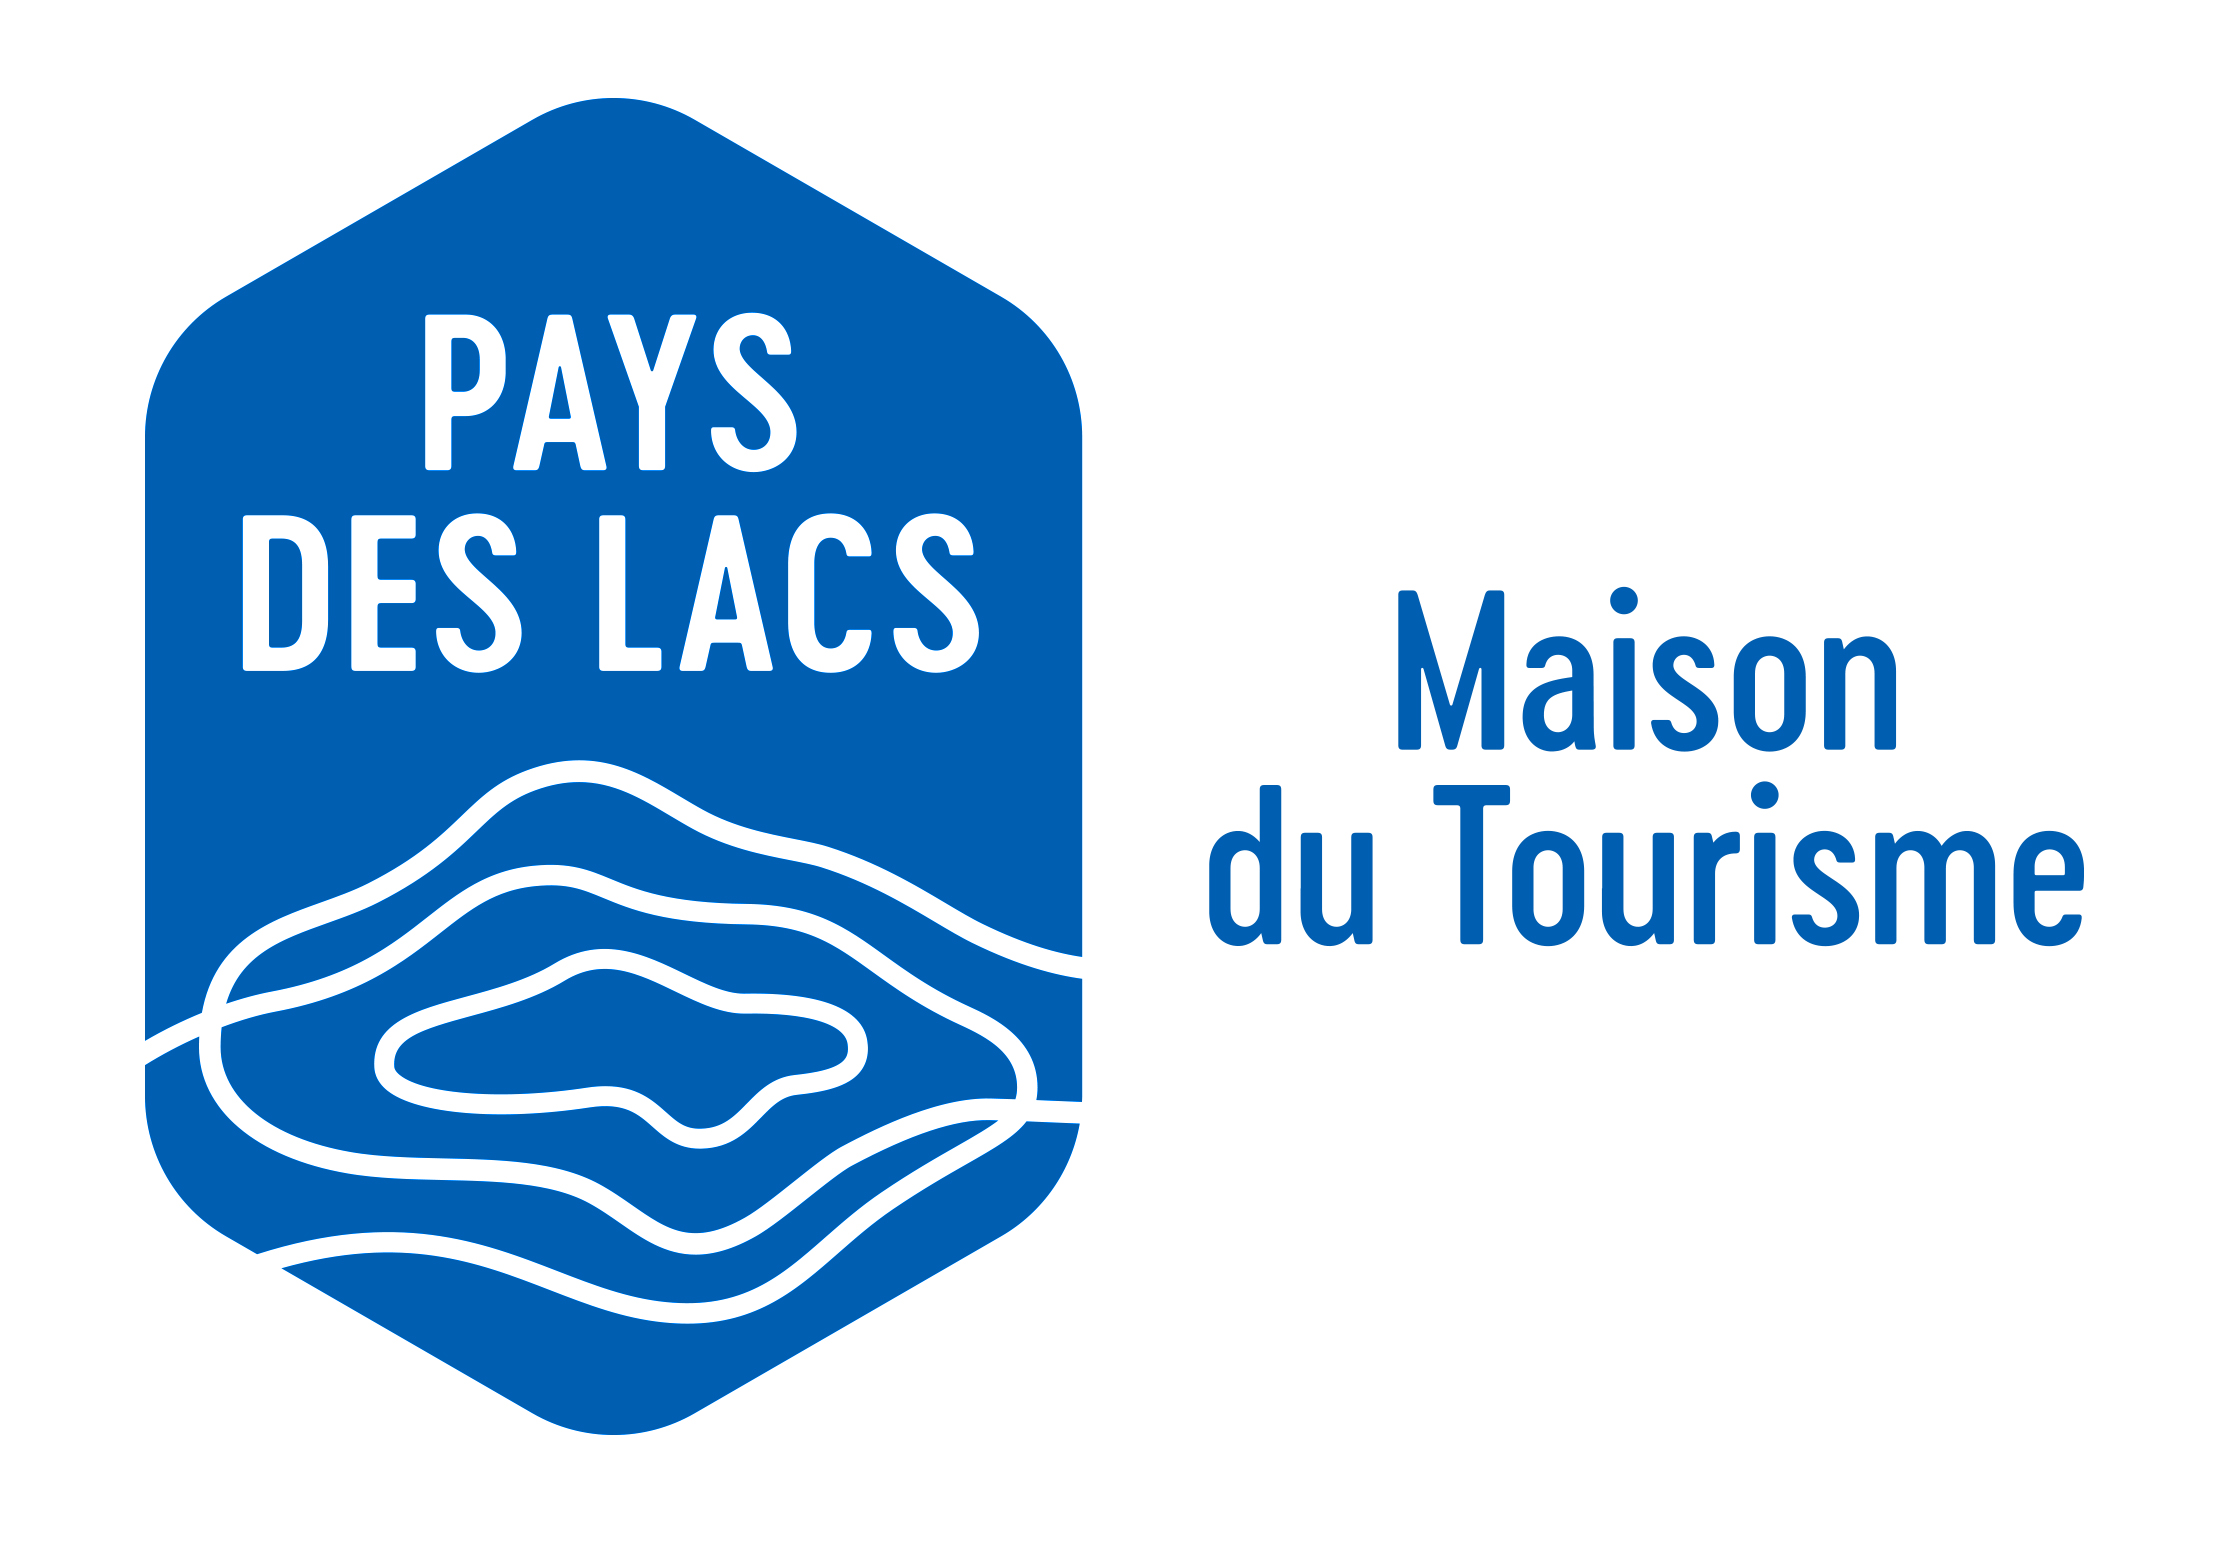 MAISON DU TOURISME PAYS DES LACS